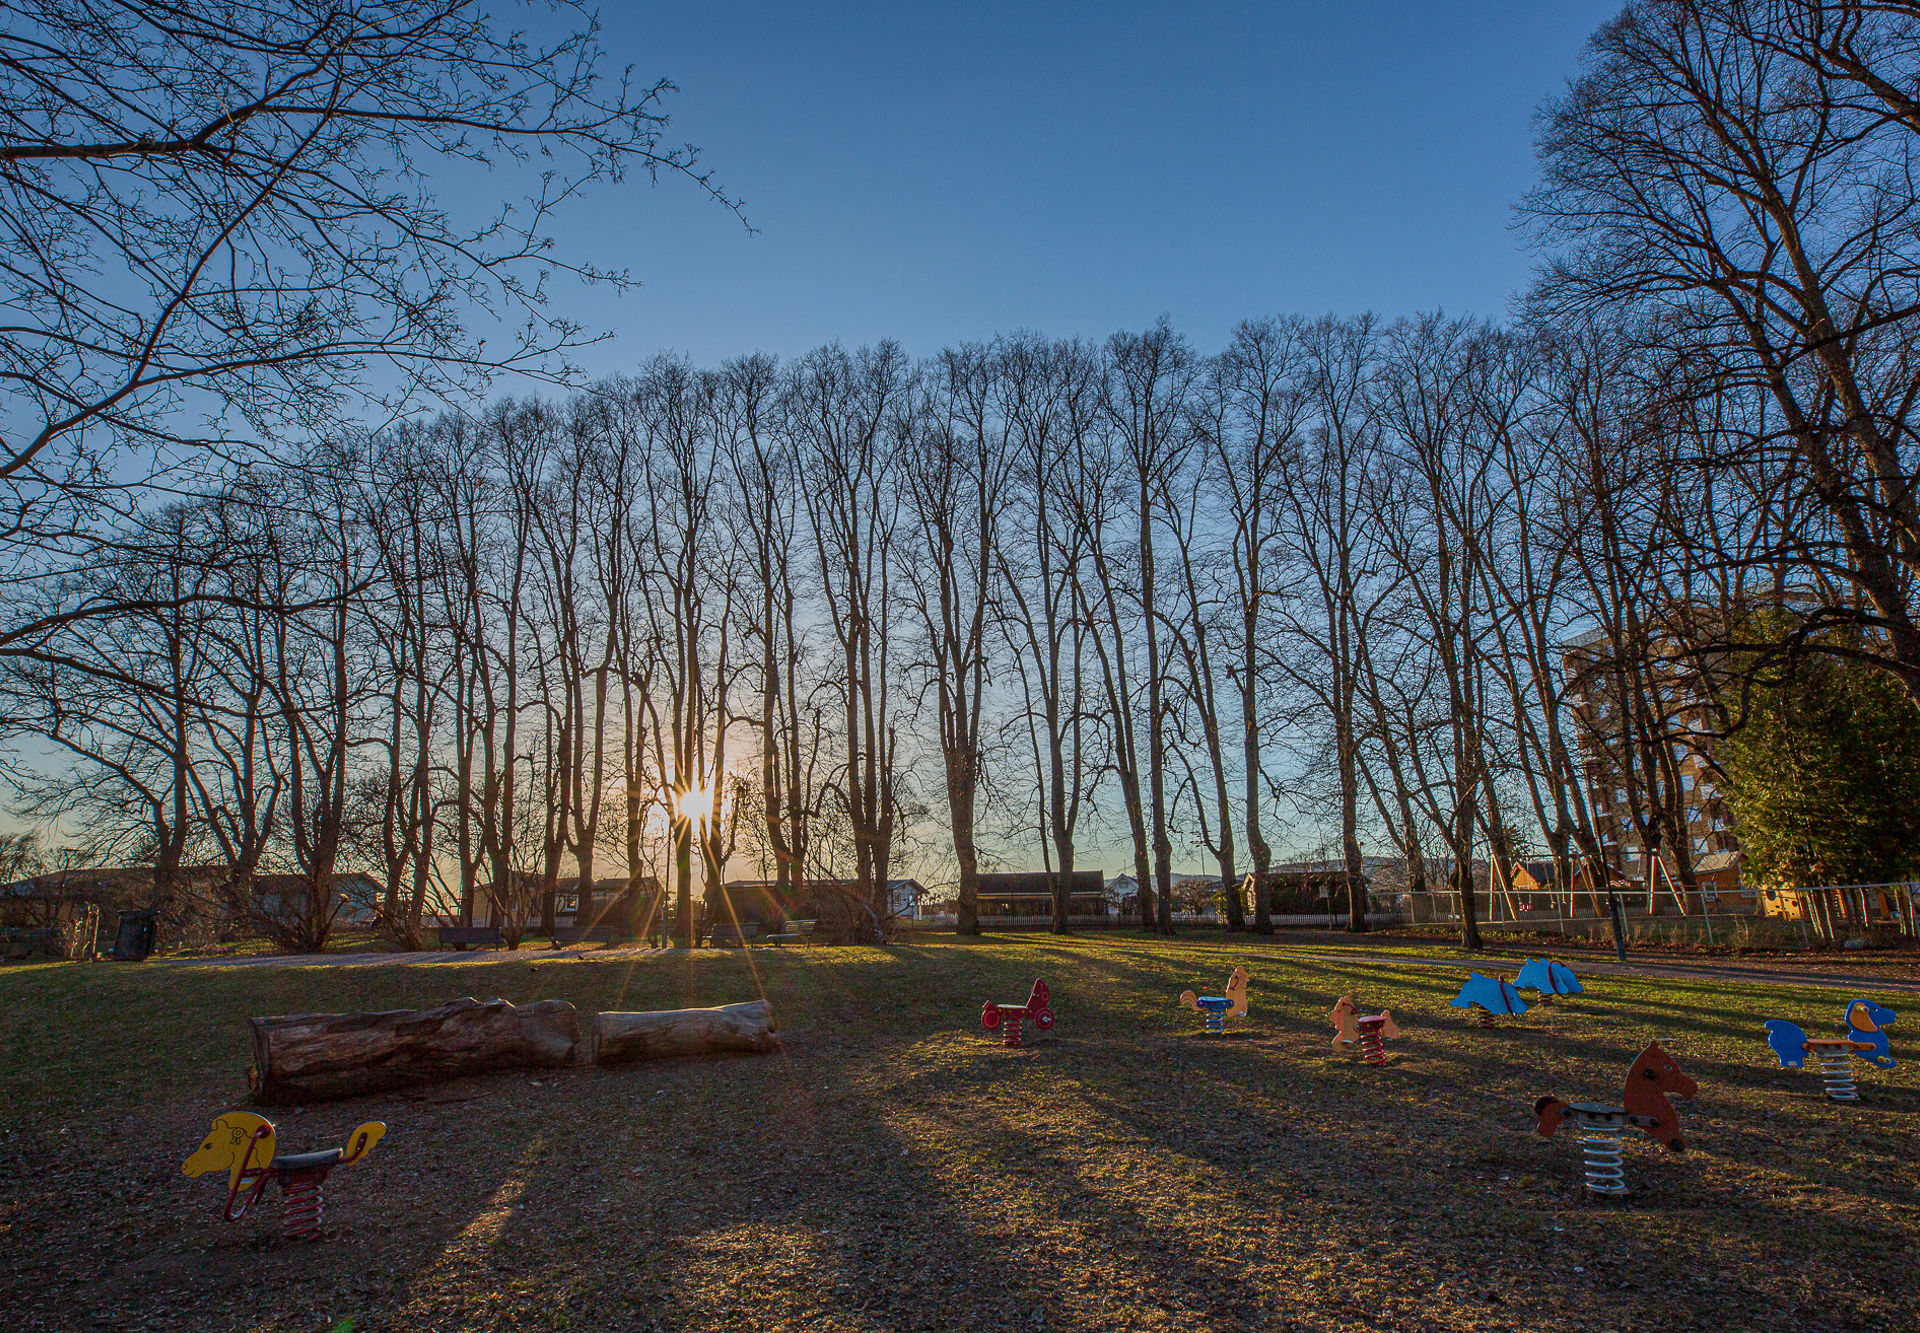 Solnedgang gjennom en lang rekke med trær. Fargerike lekeapparater for barn i forgrunnen.